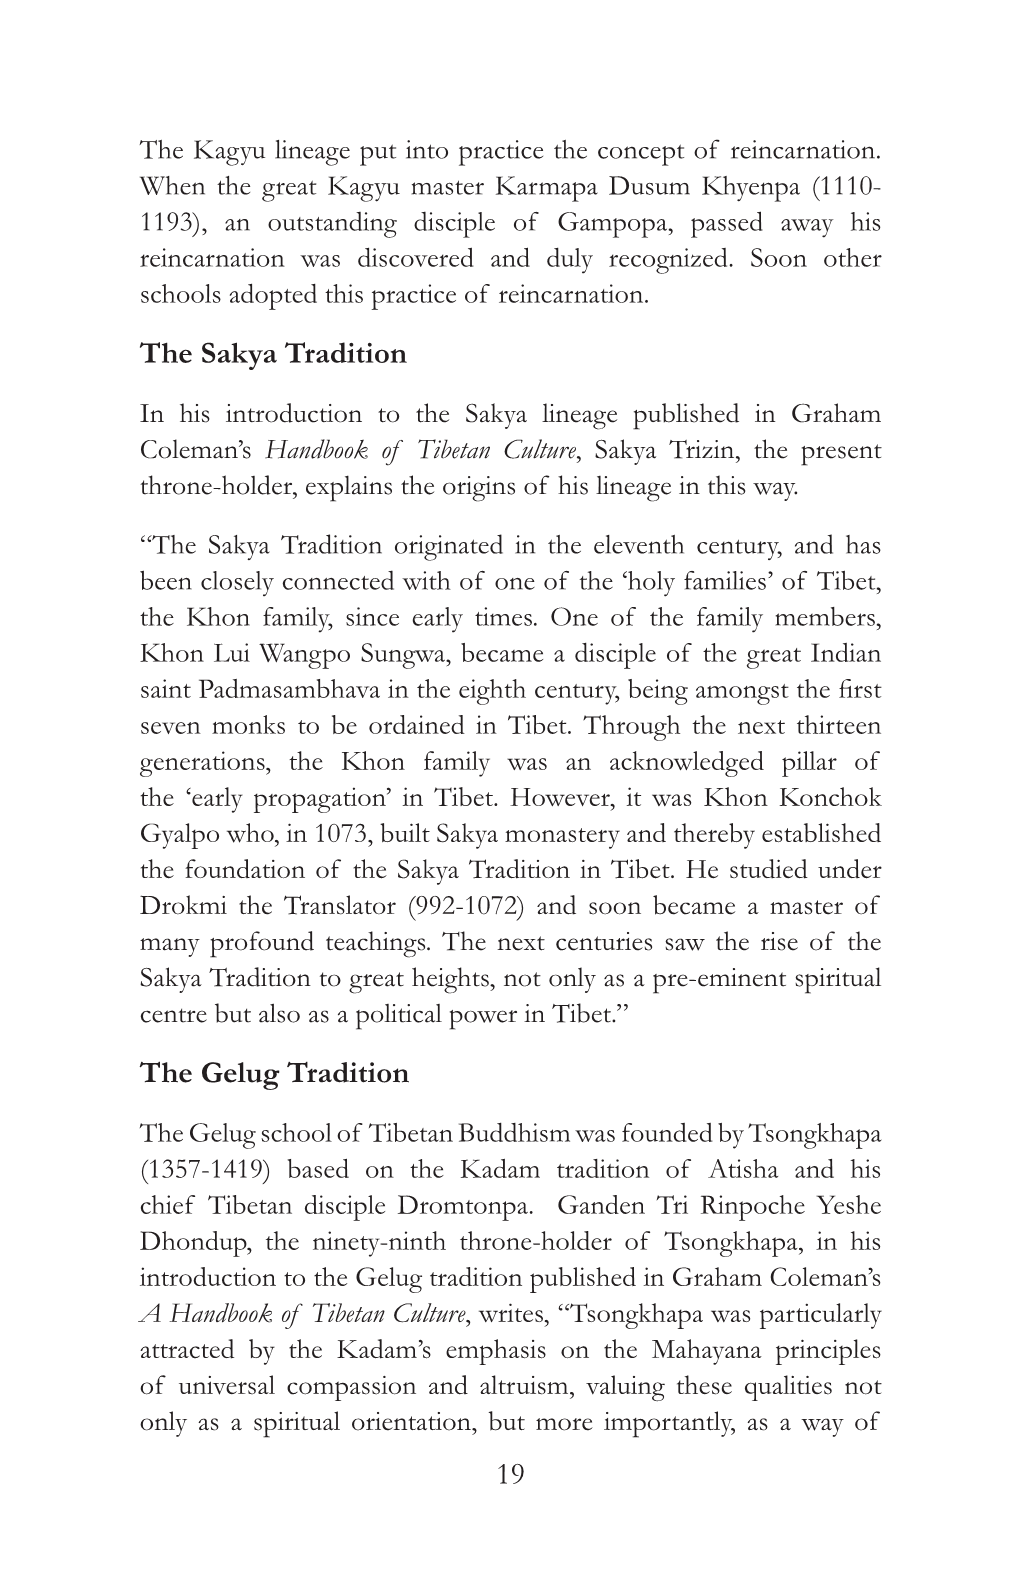 19 the Sakya Tradition the Gelug Tradition